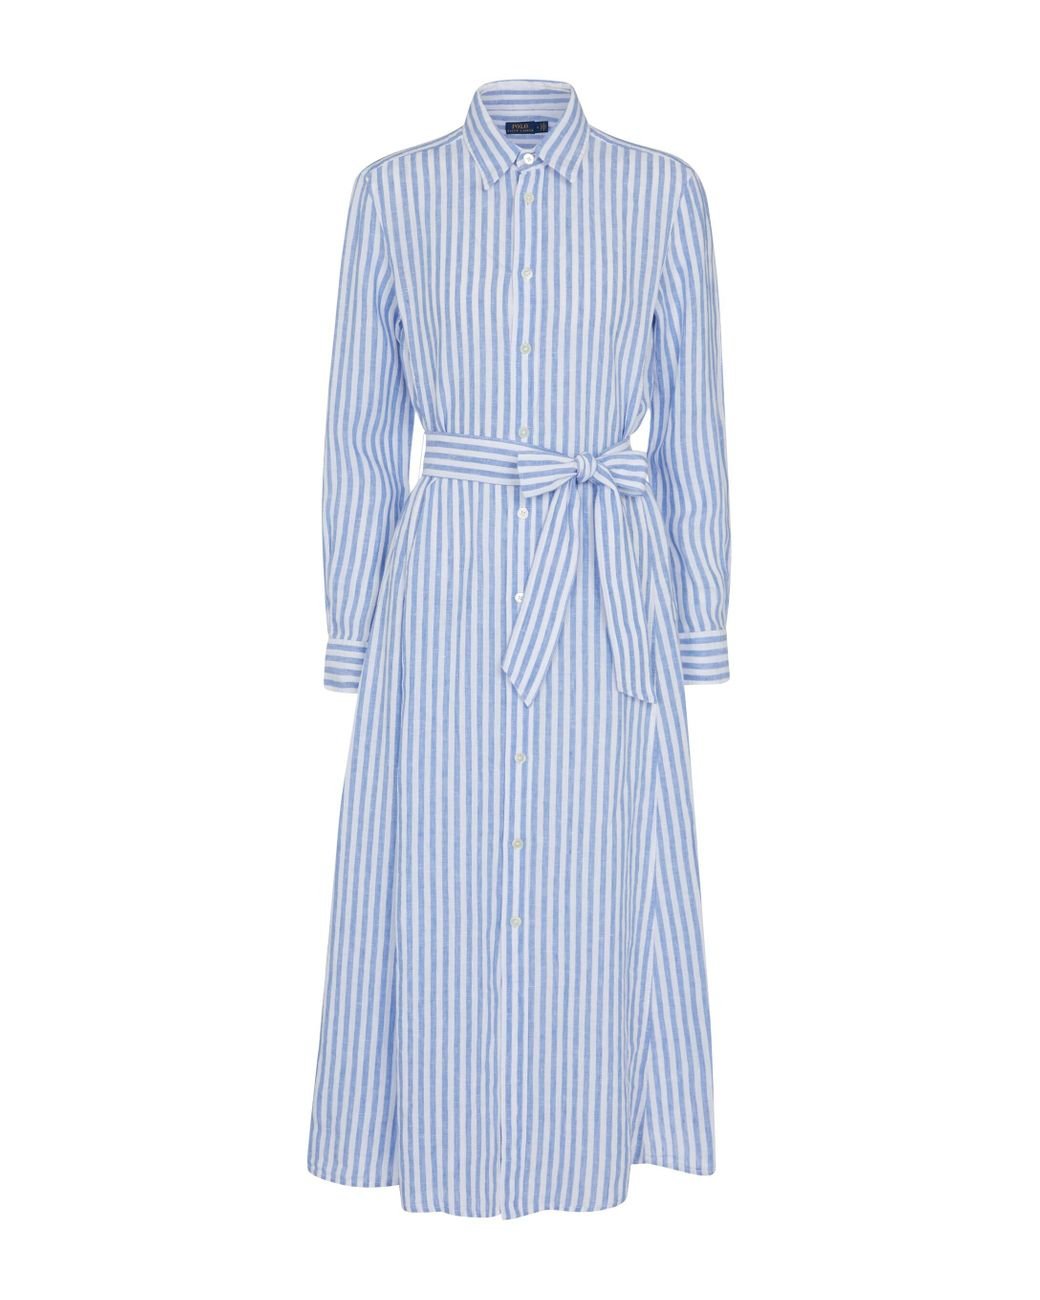 Polo Ralph Lauren Striped Linen Shirt Dress in Blue | Lyst Canada